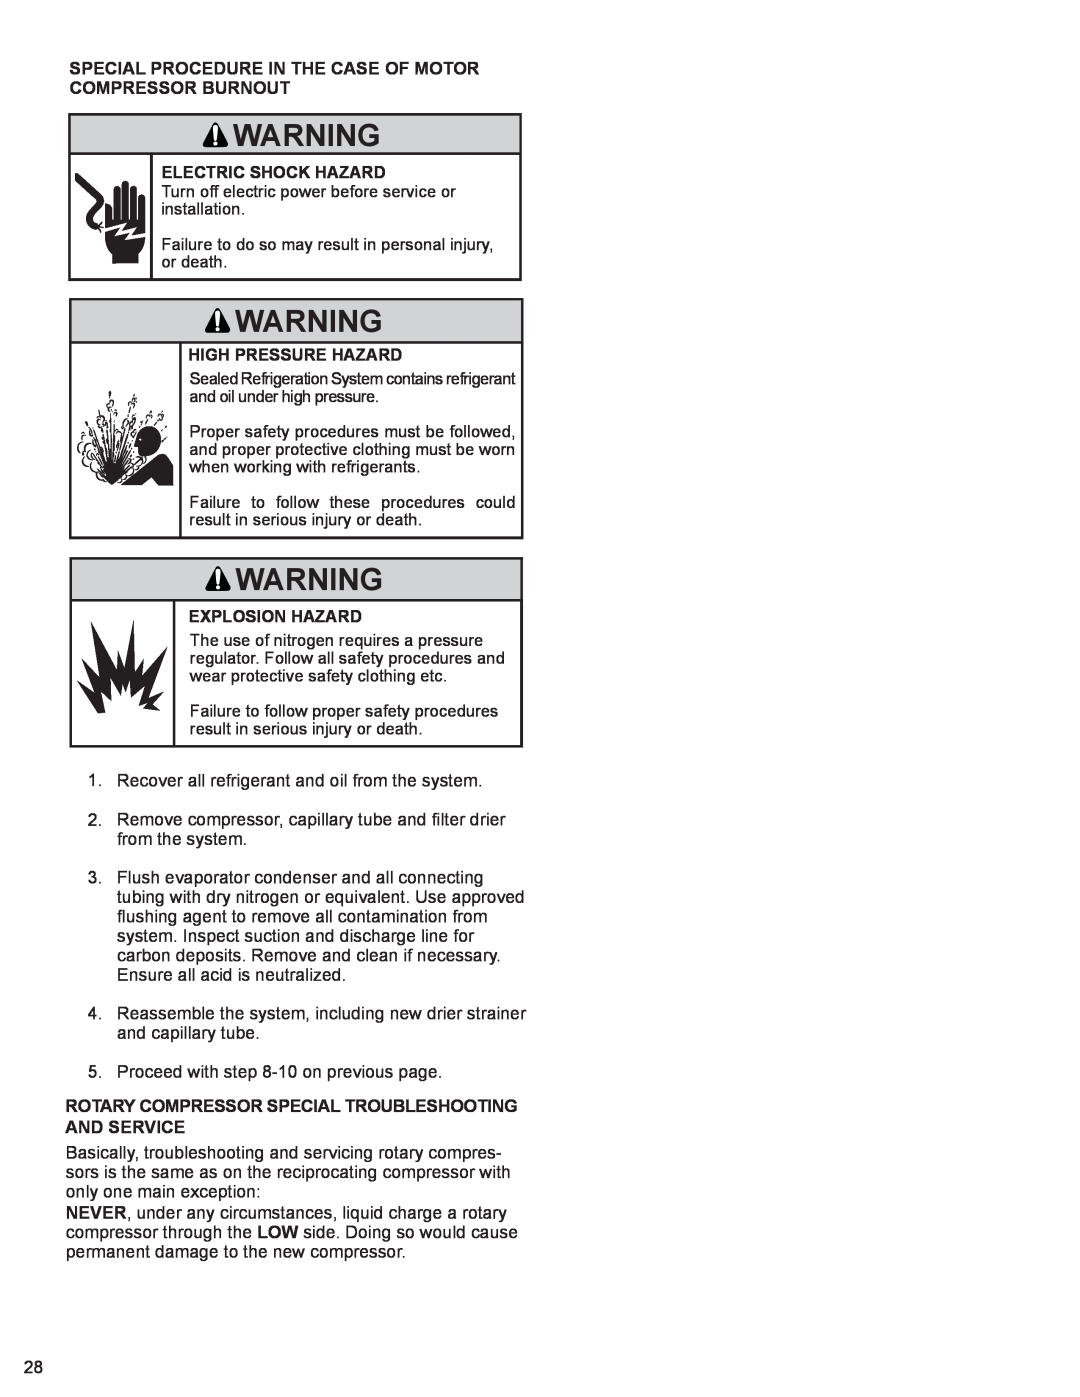 Friedrich WS10B10 service manual Electric Shock Hazard, High Pressure Hazard, Explosion Hazard 